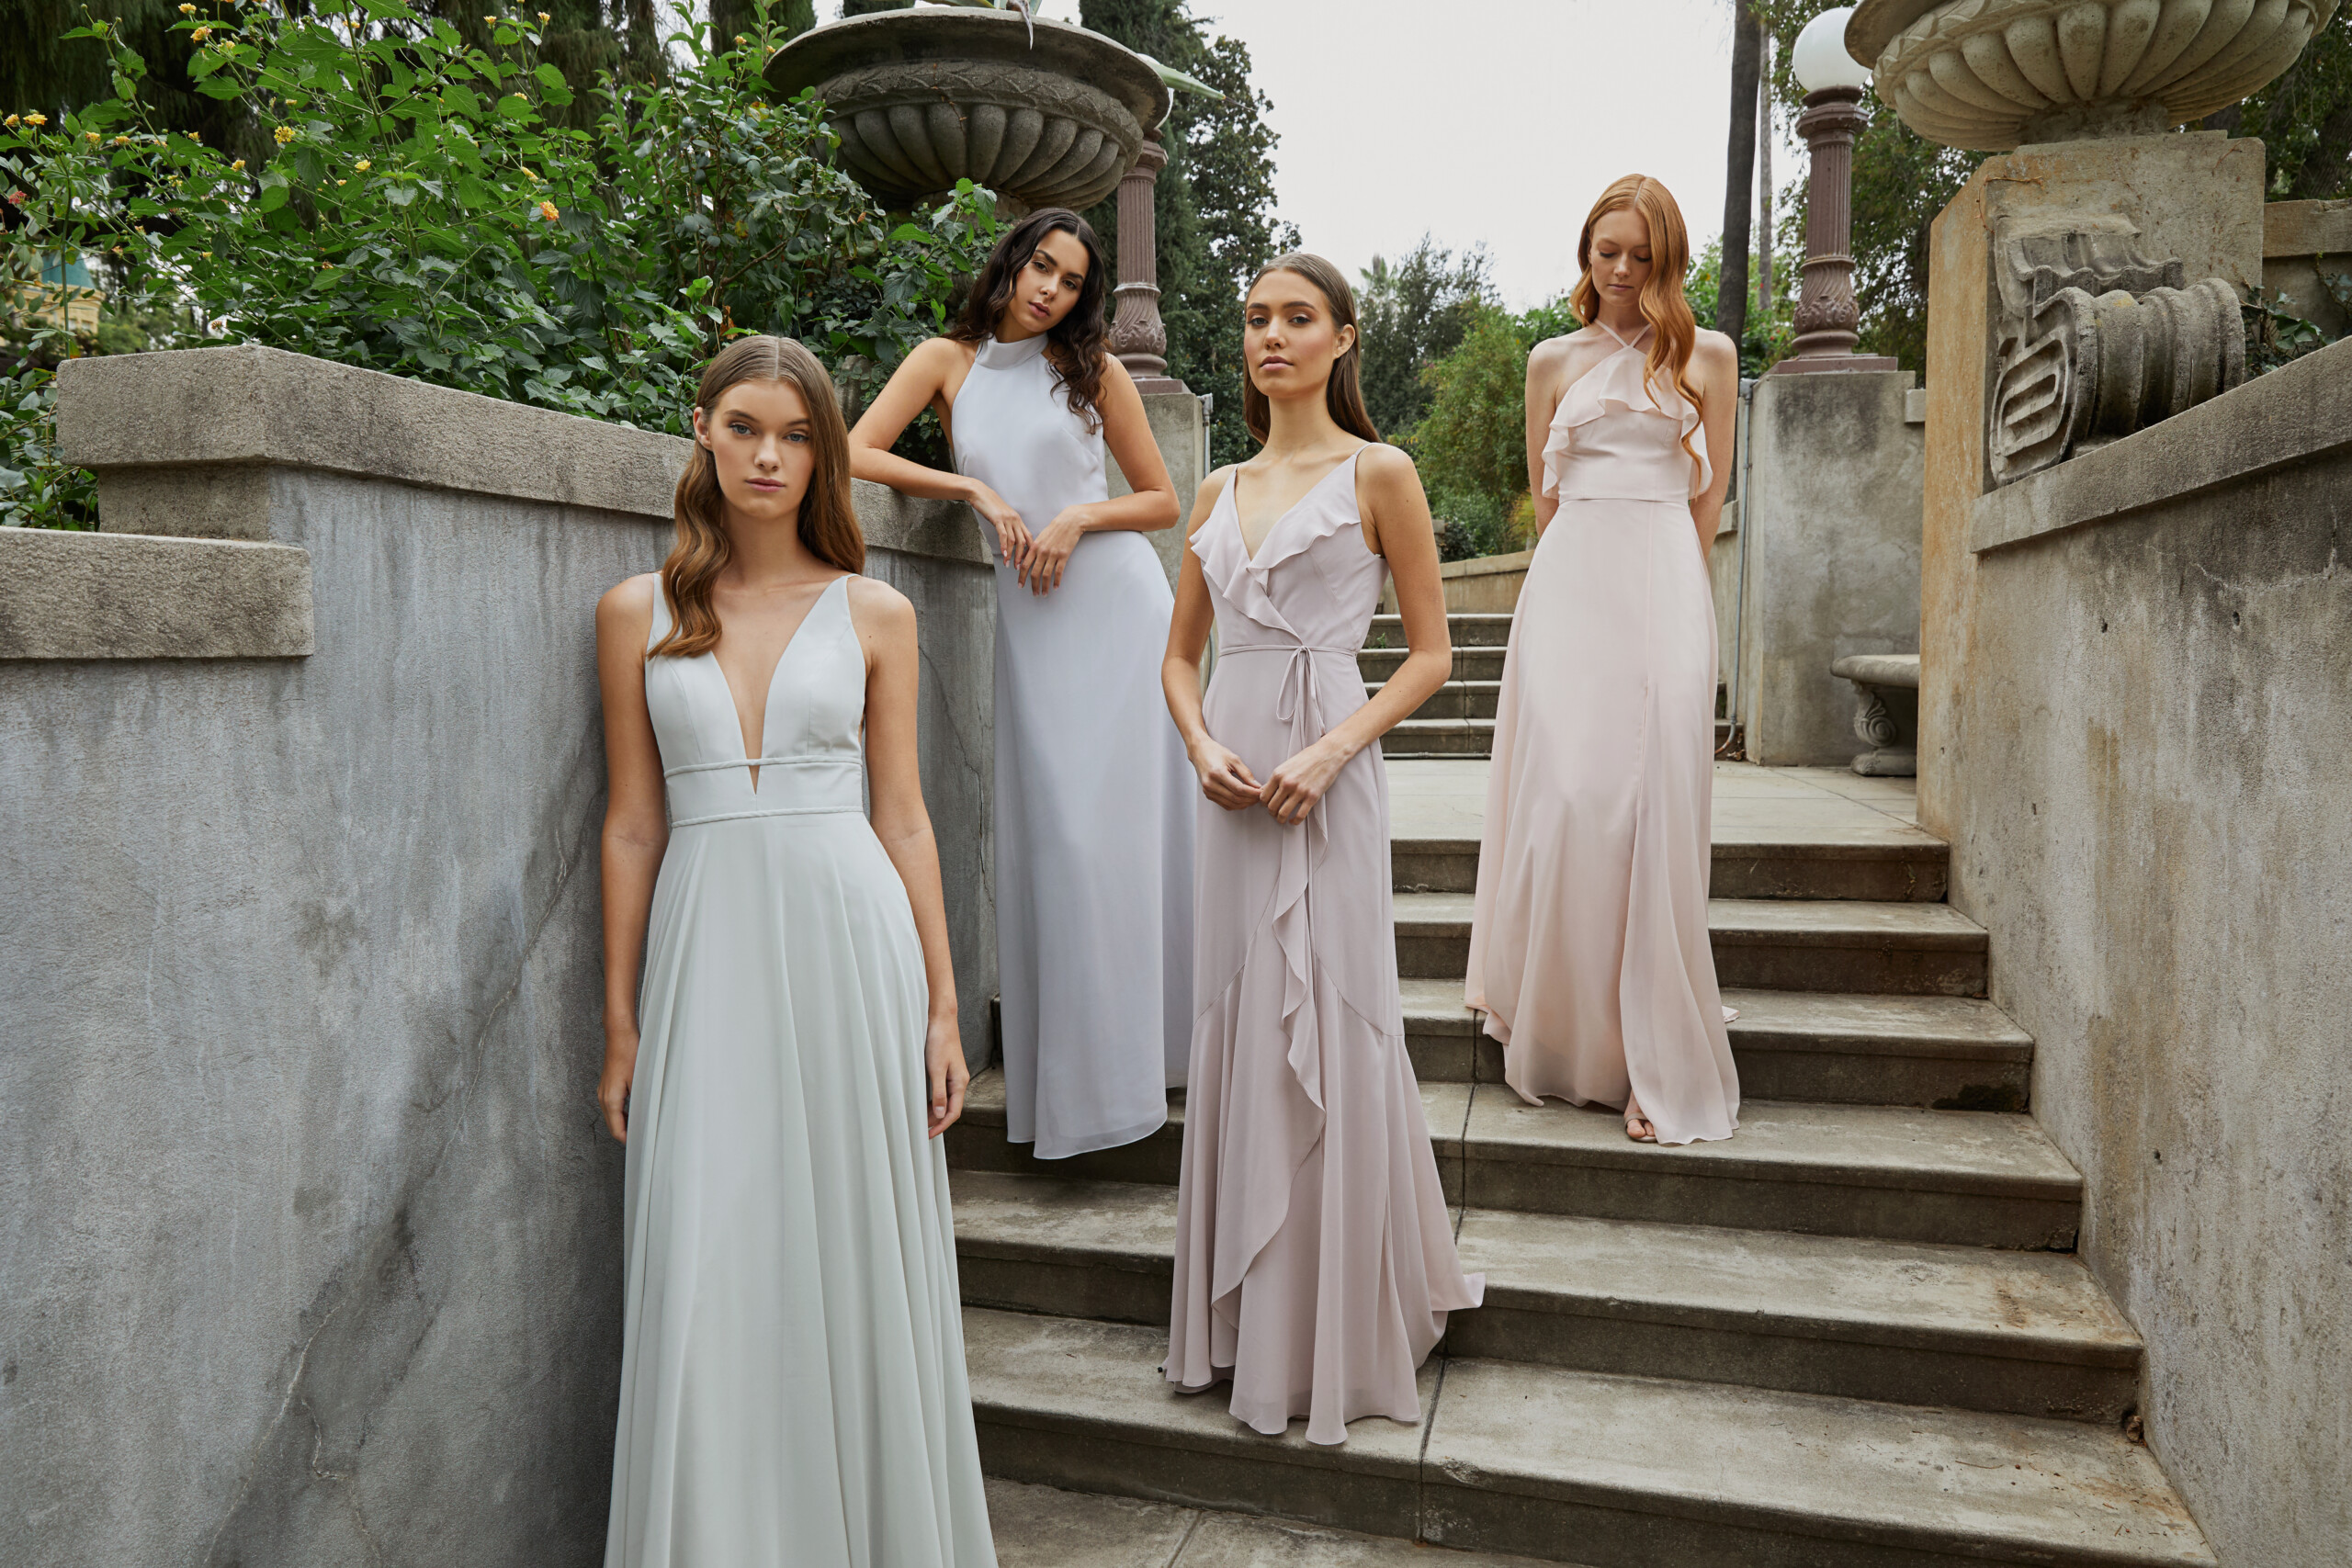 New Bridesmaid Dress Styles for 2020 at Bella Bridesmaids